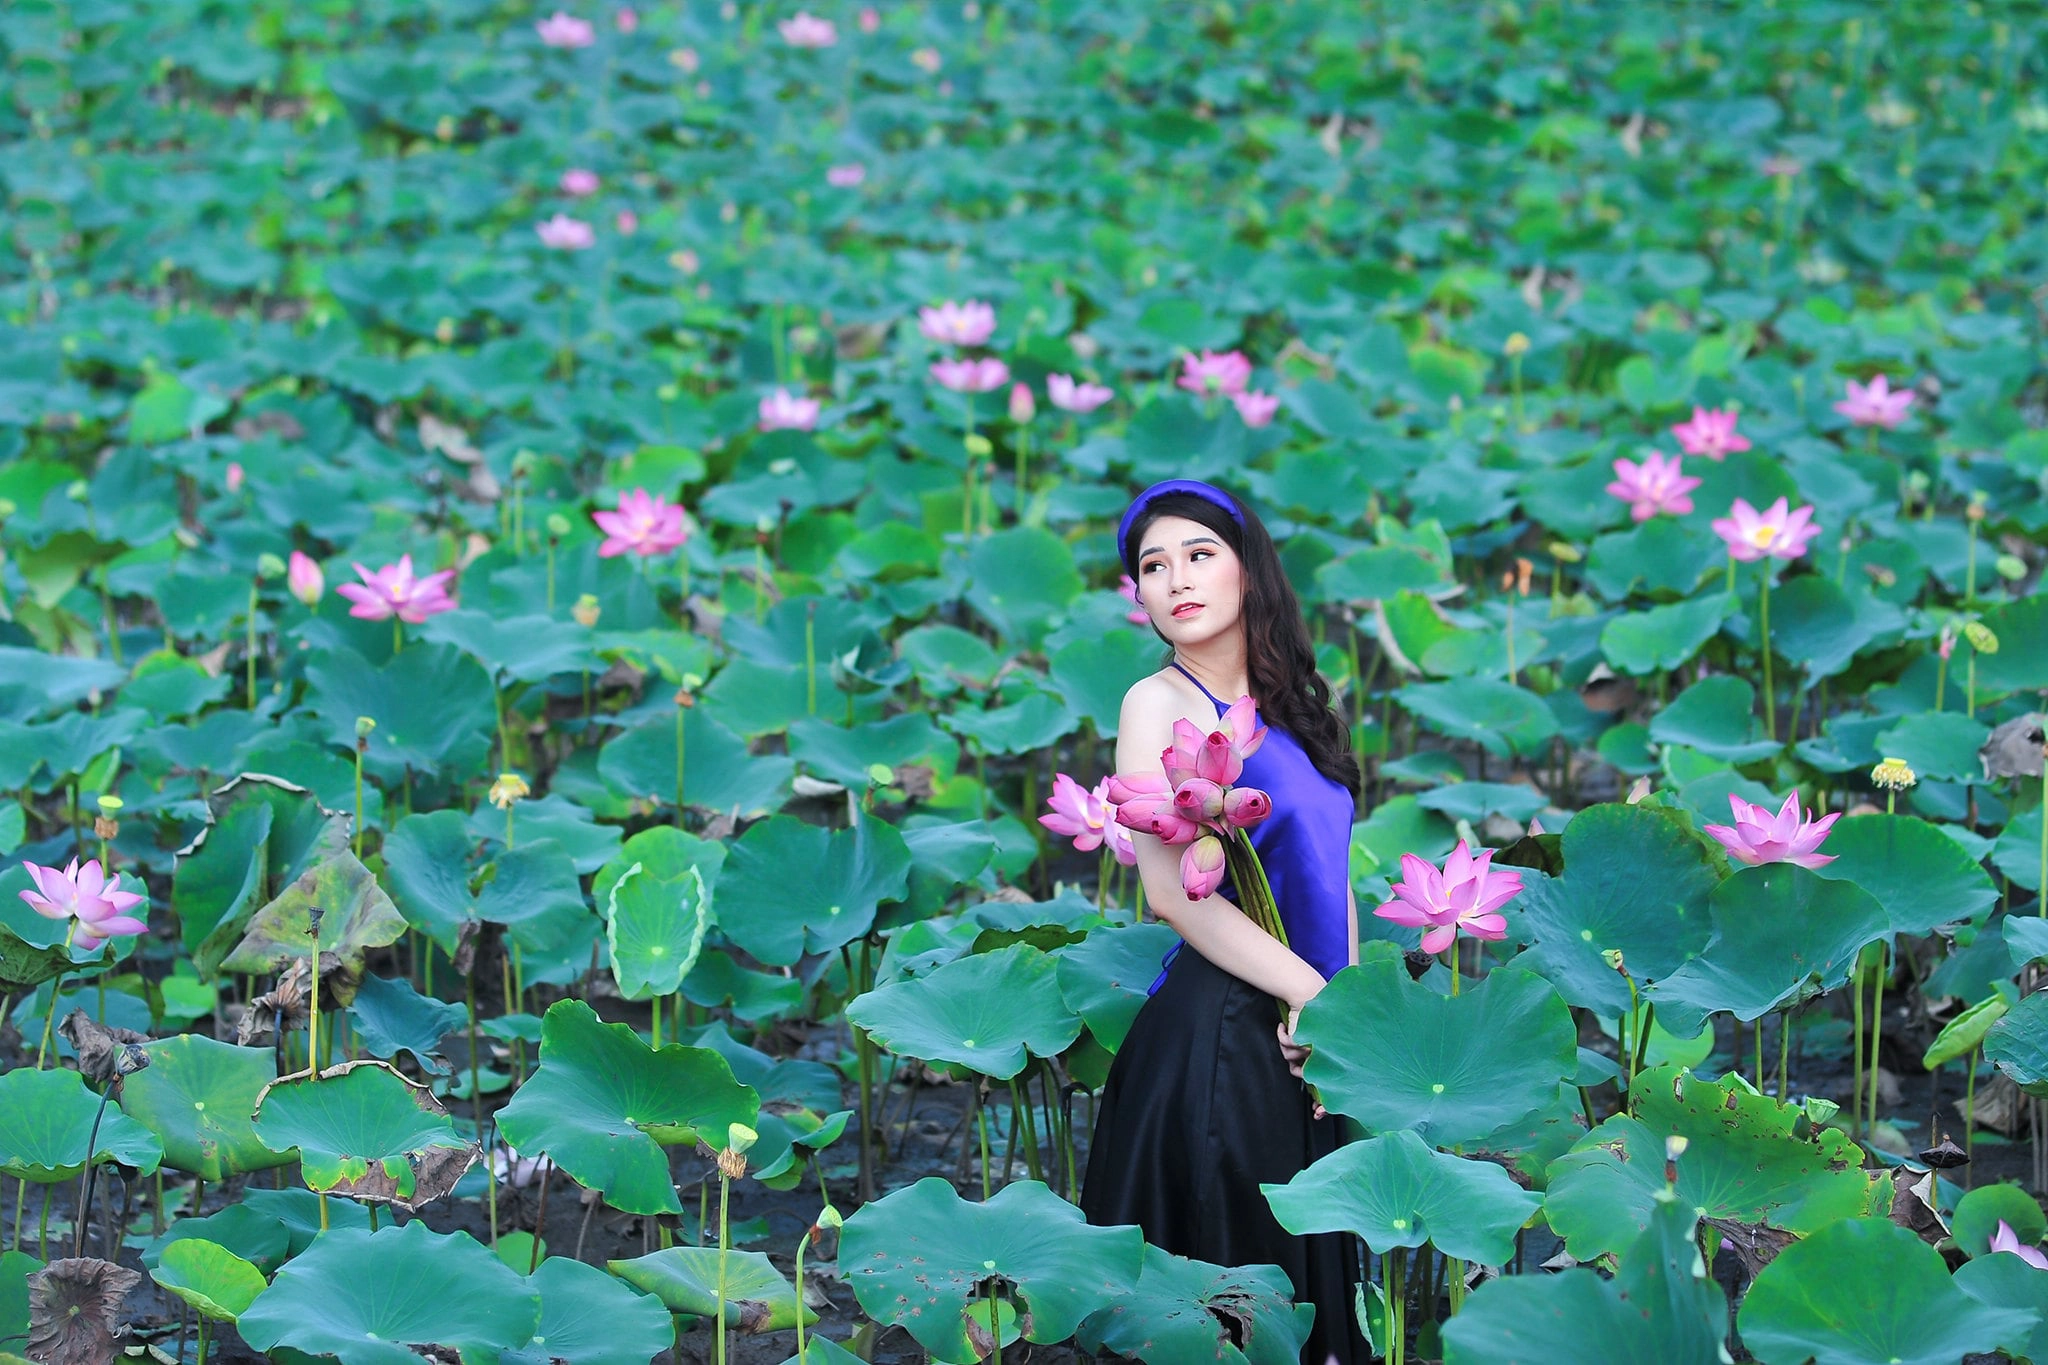 anh sen 9 - 39 cách tạo dáng chụp ảnh với hoa sen tuyệt đẹp - HThao Studio